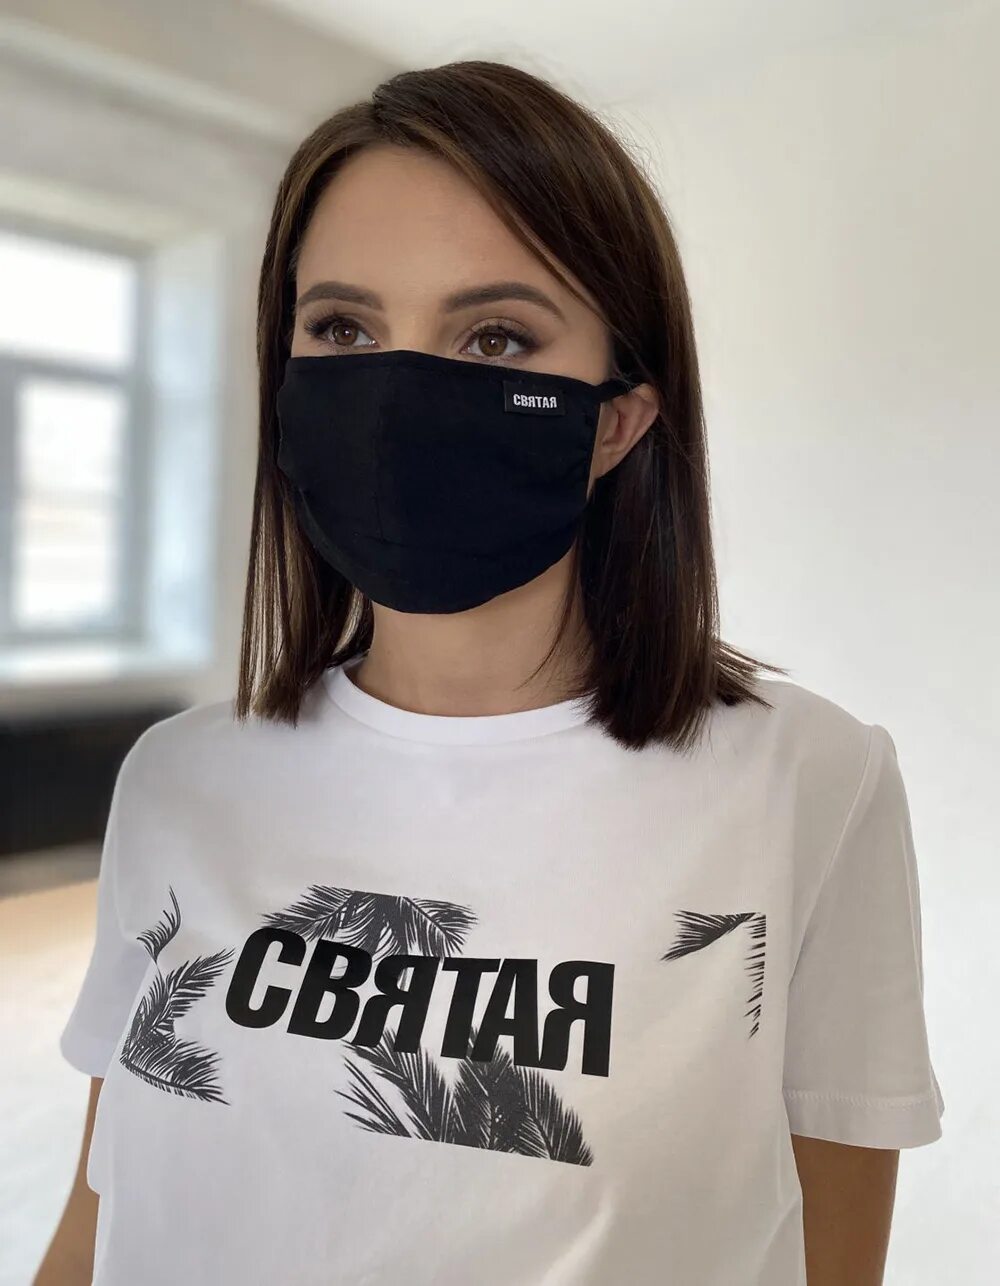 Жена маска русская. Российская маска. Масок российских брендов. Маска Святая.